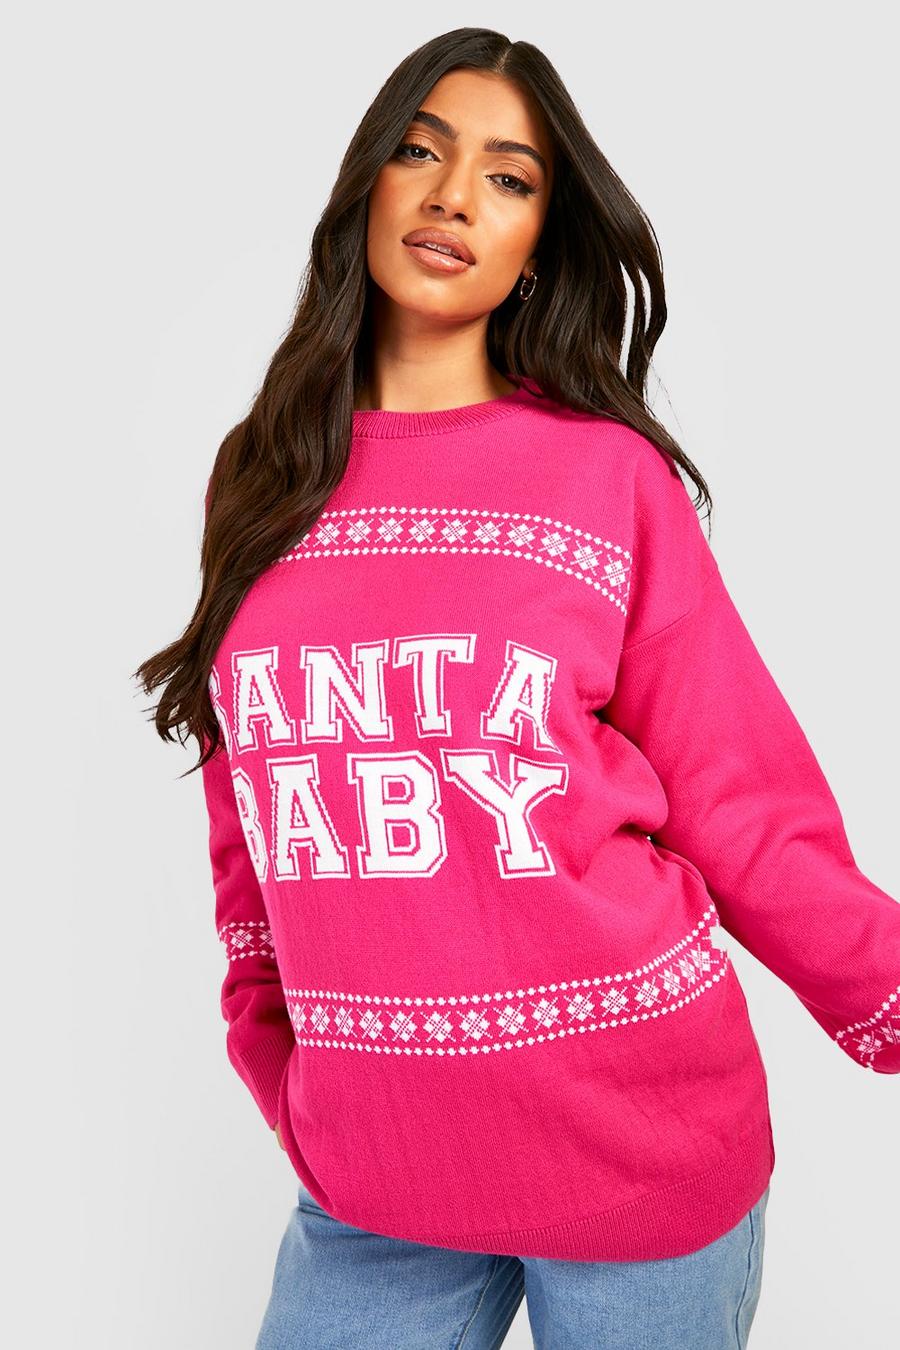 Jersey Premamá navideño con estampado Santa Baby, Pink image number 1